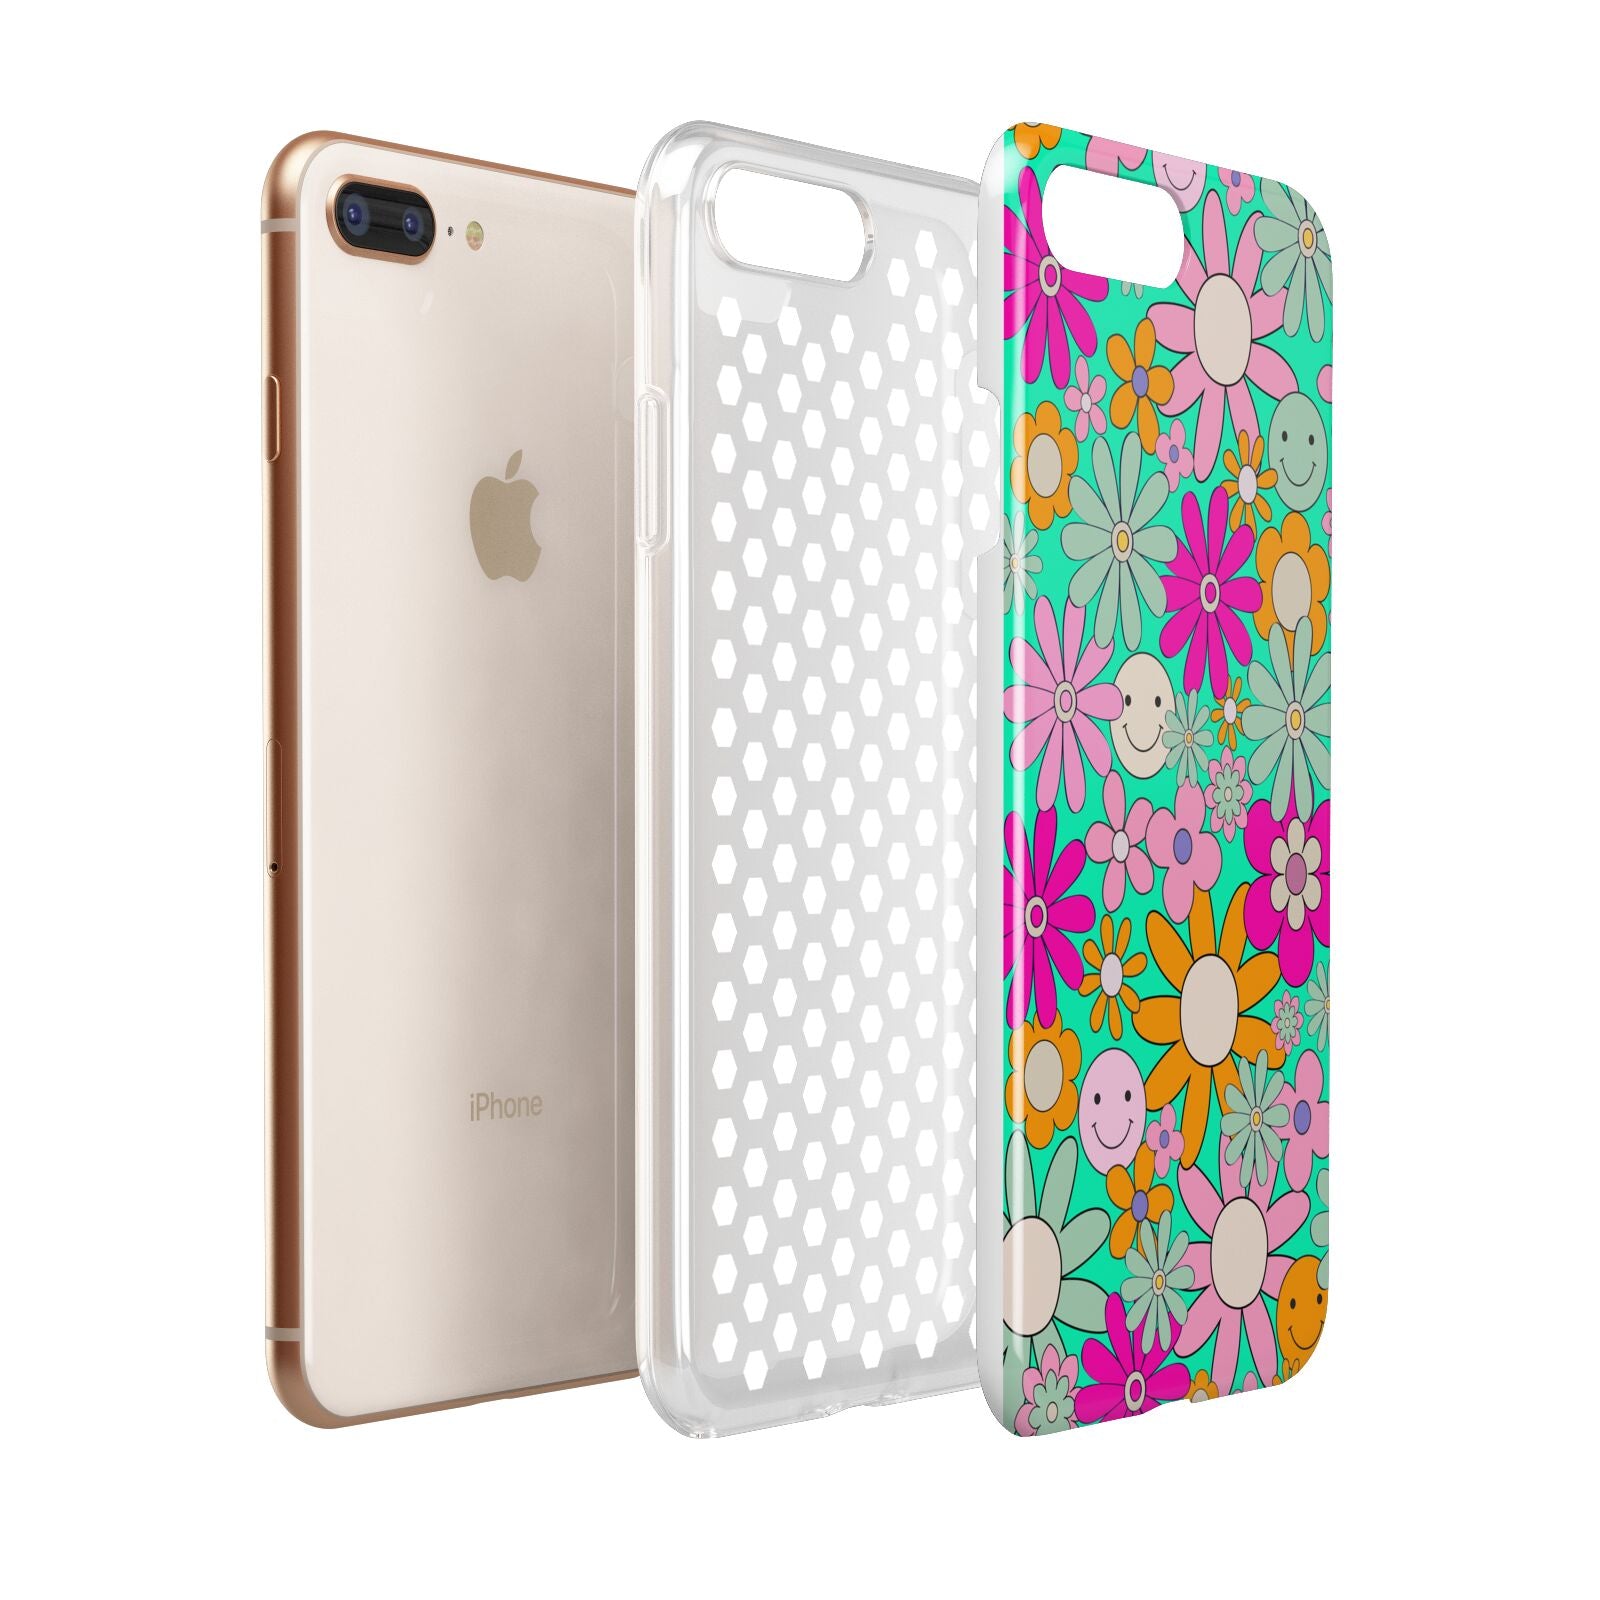 Hippy Floral Apple iPhone 7 8 Plus 3D Tough Case Expanded View